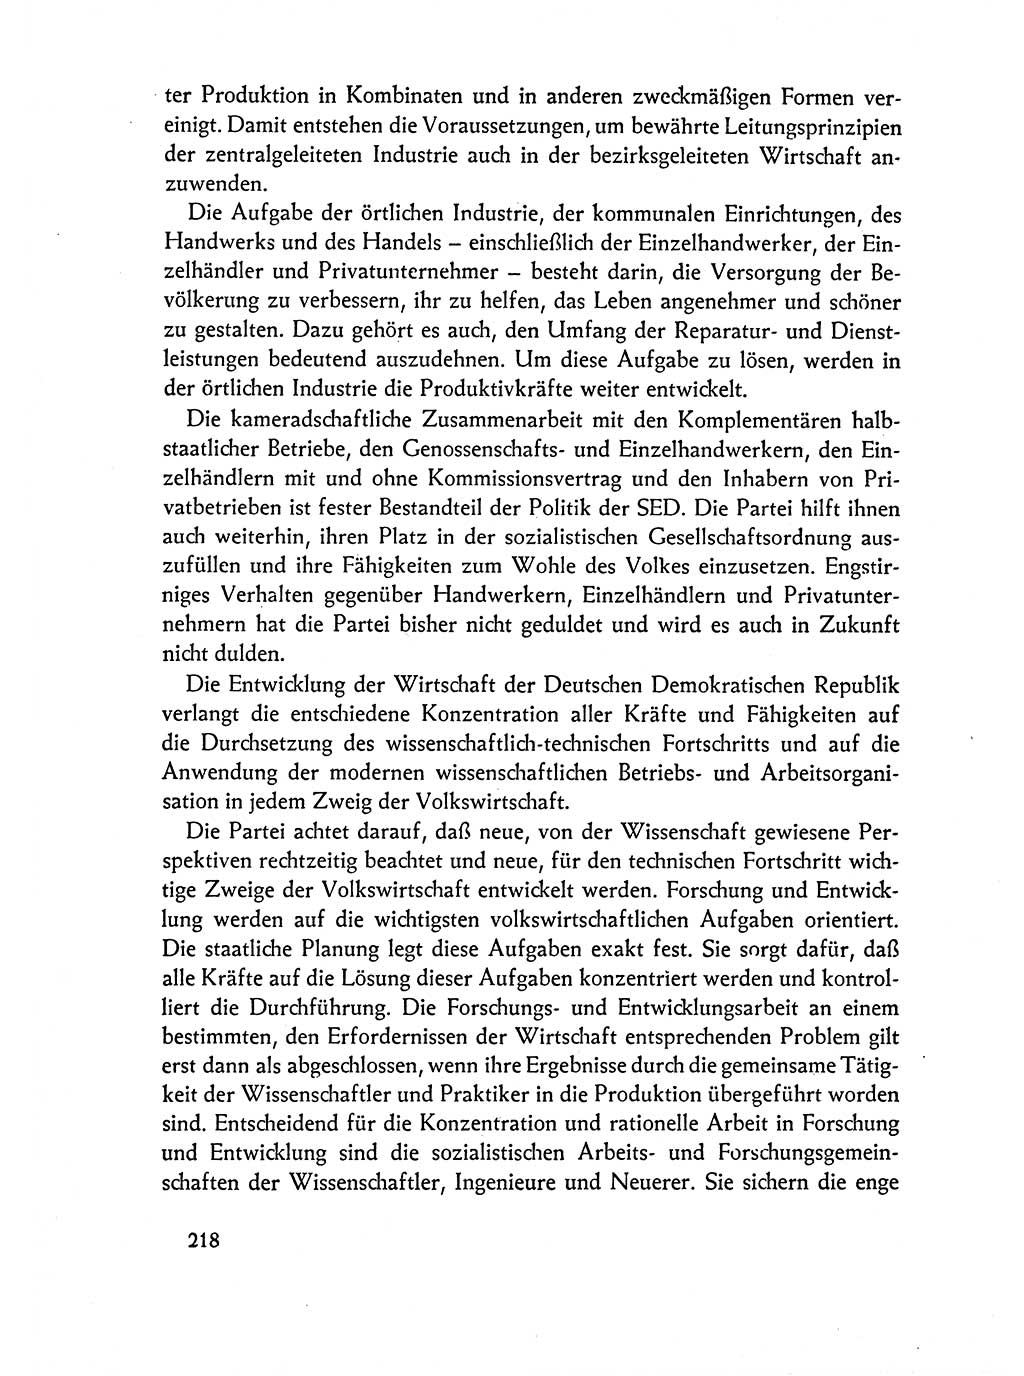 Dokumente der Sozialistischen Einheitspartei Deutschlands (SED) [Deutsche Demokratische Republik (DDR)] 1962-1963, Seite 218 (Dok. SED DDR 1962-1963, S. 218)